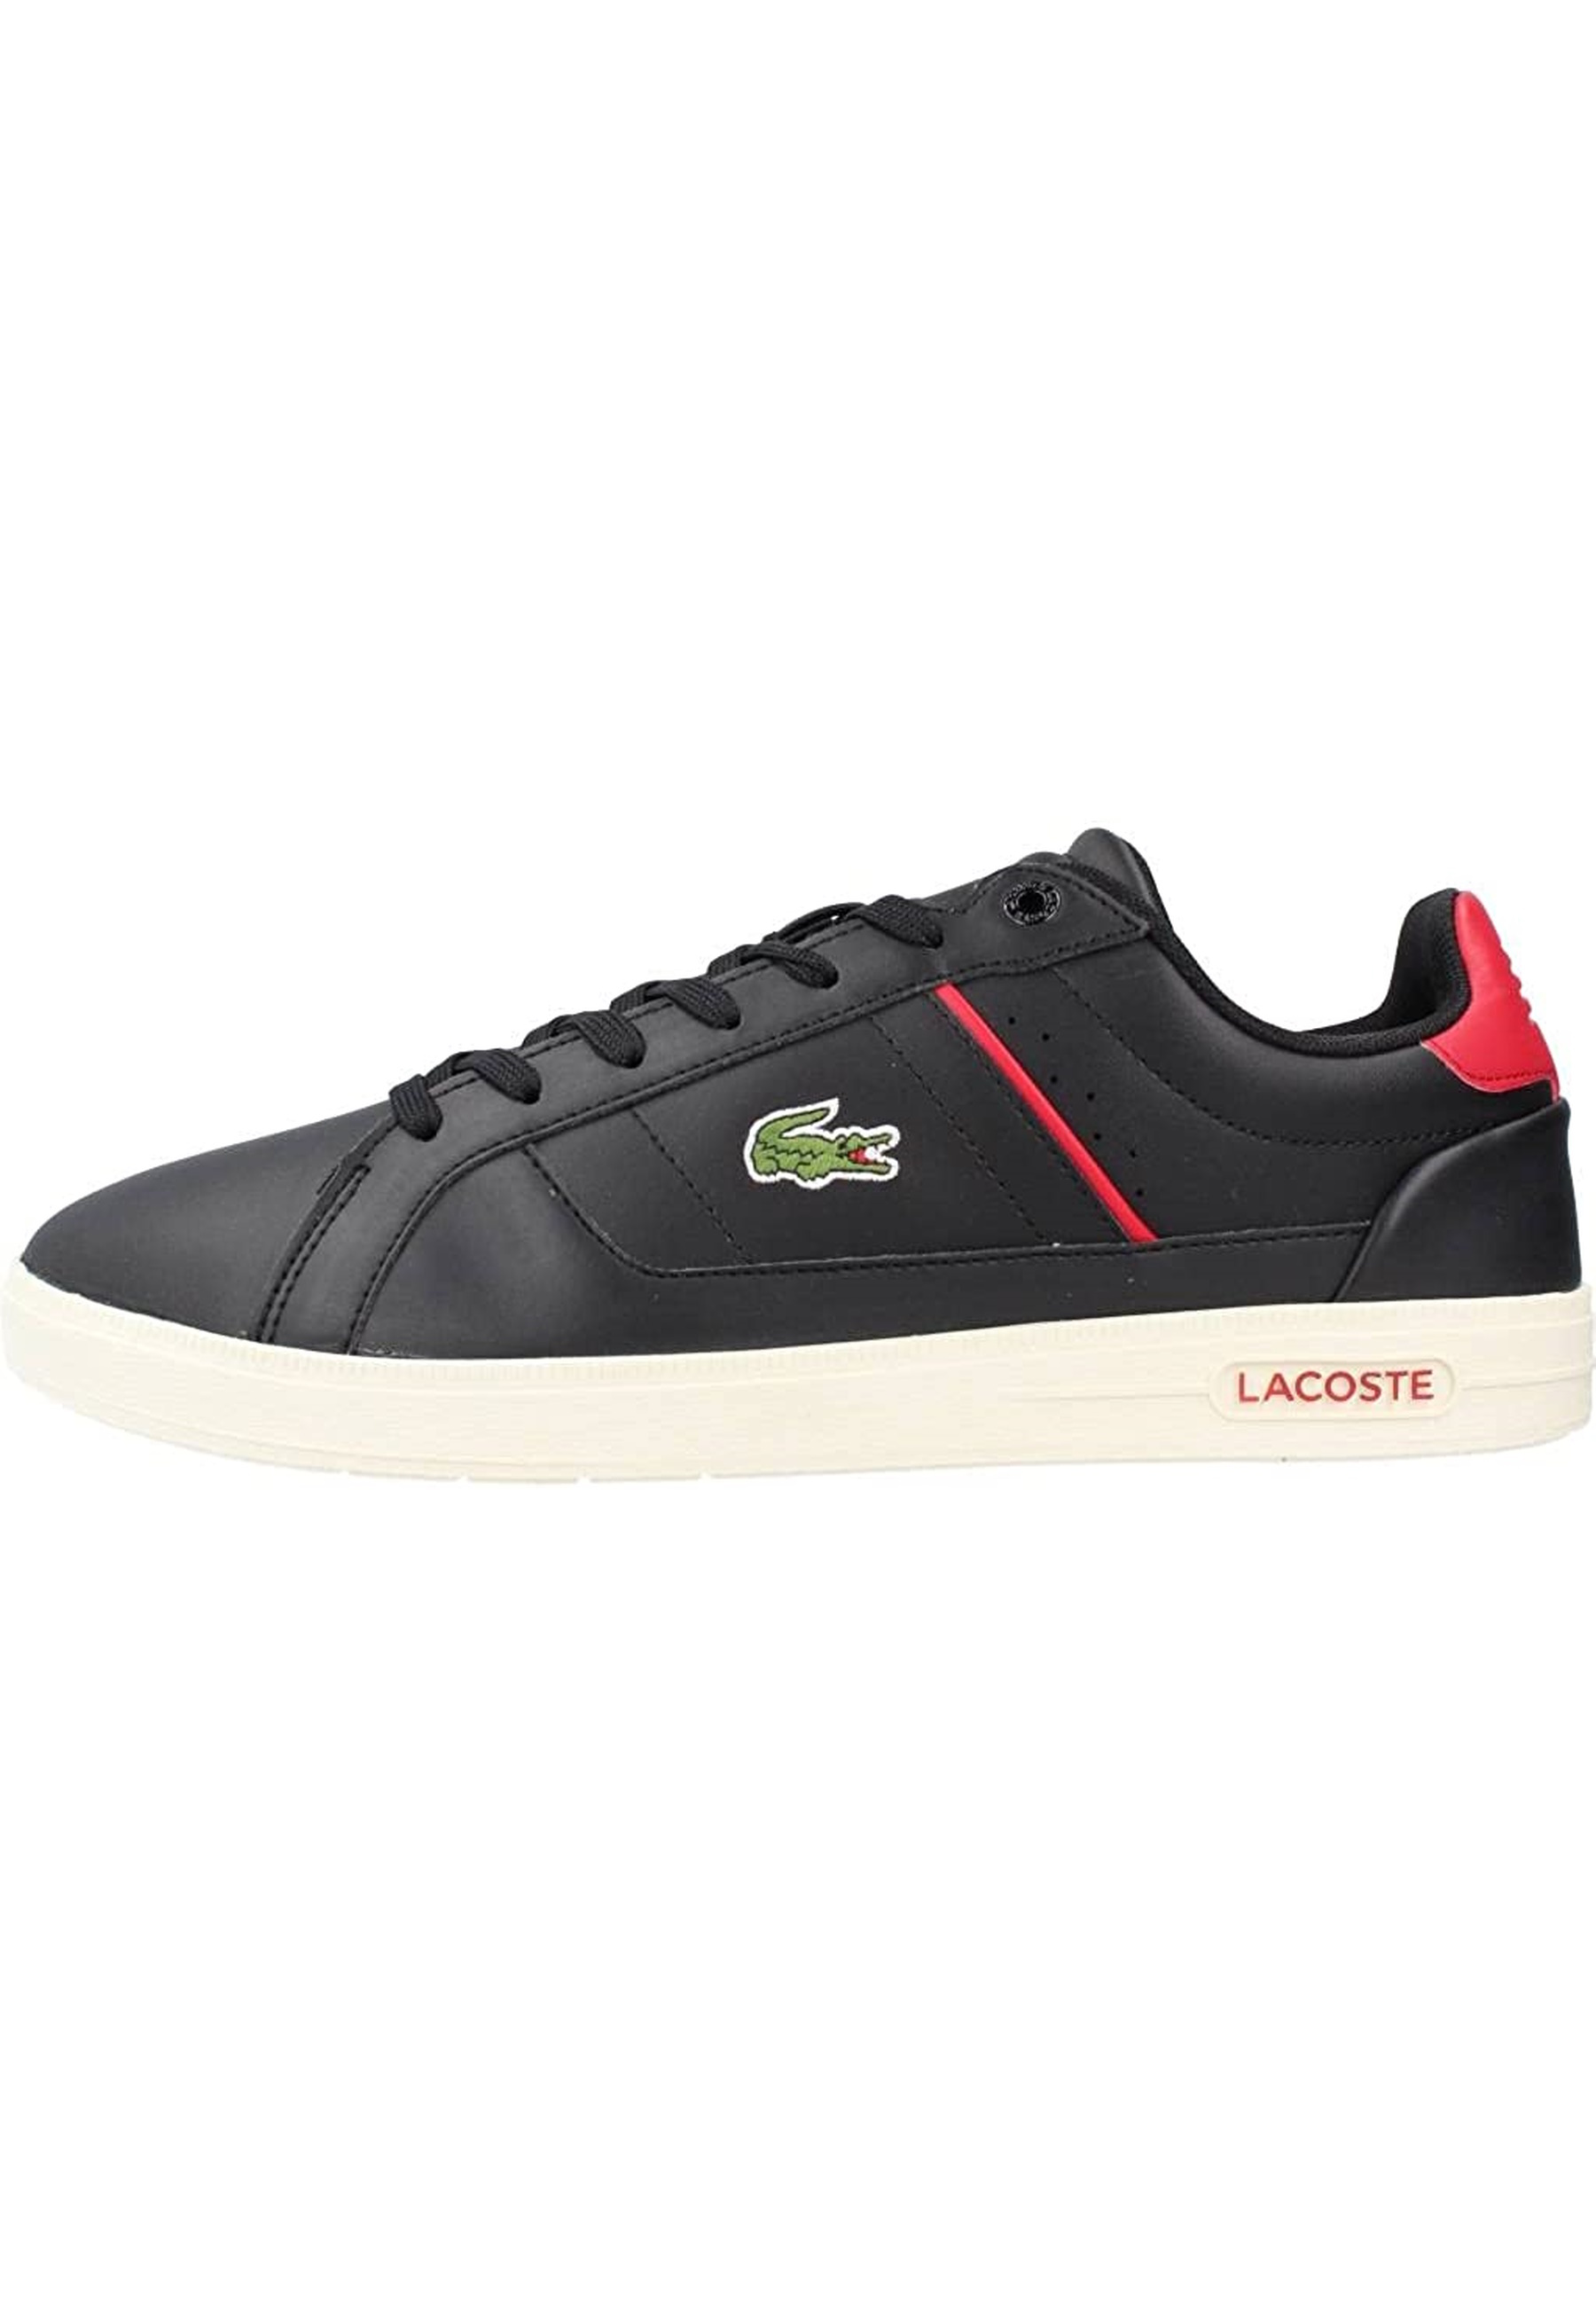 Низкие кроссовки Lacoste 'Europa Pro 222', черный туфли europa pro из кожи lacoste белый